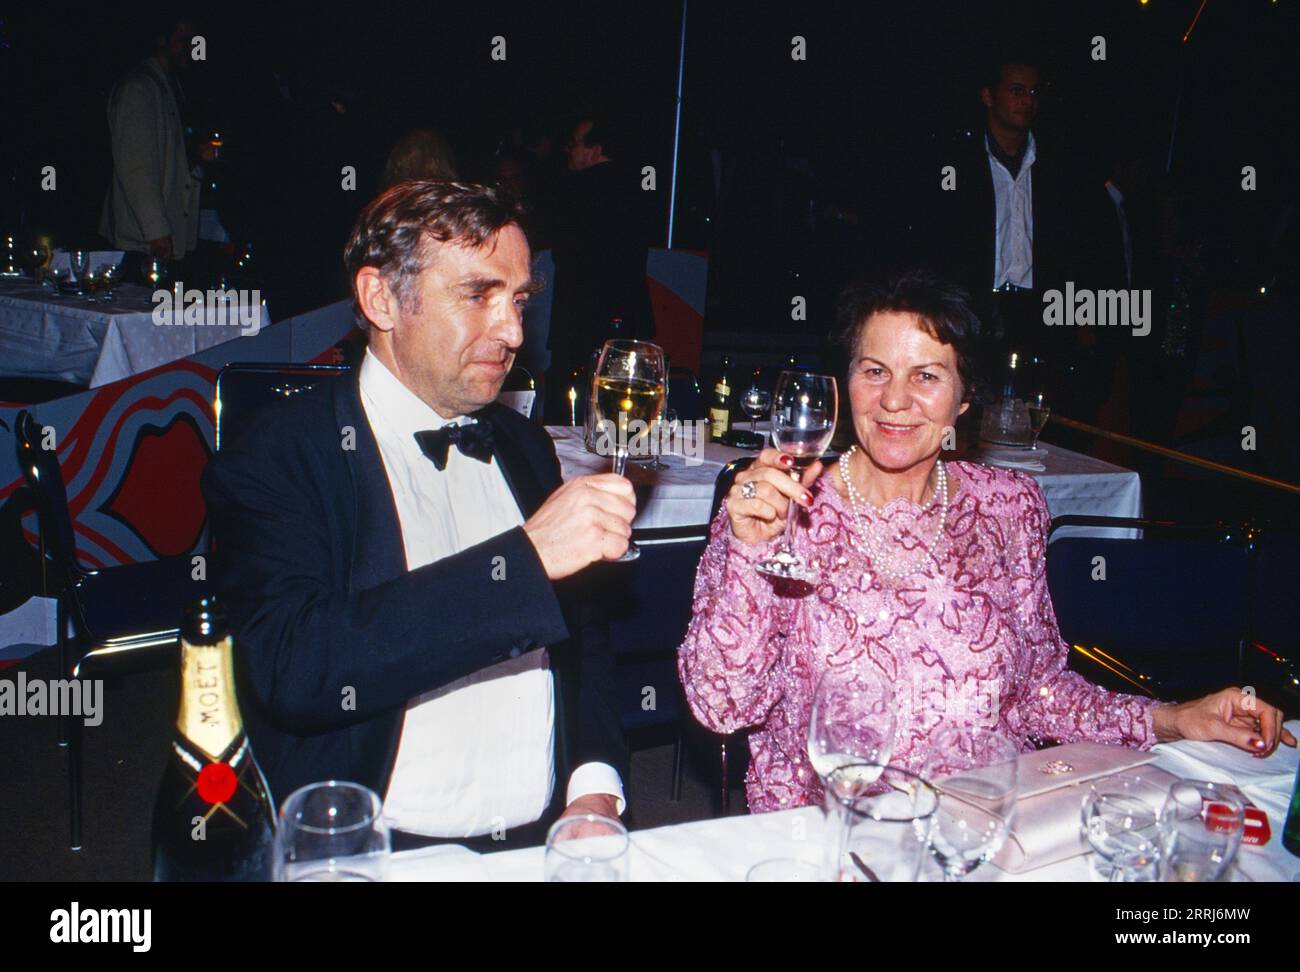 Erich Sixt, deutscher Unternehmer, Aufsichtsratsvorsitzender der Sixt SE, am Tisch mit Angela Waldleitner, Ehefrau des Filmproduzenten Luggi Waldleitner, circa 1990. Stock Photo